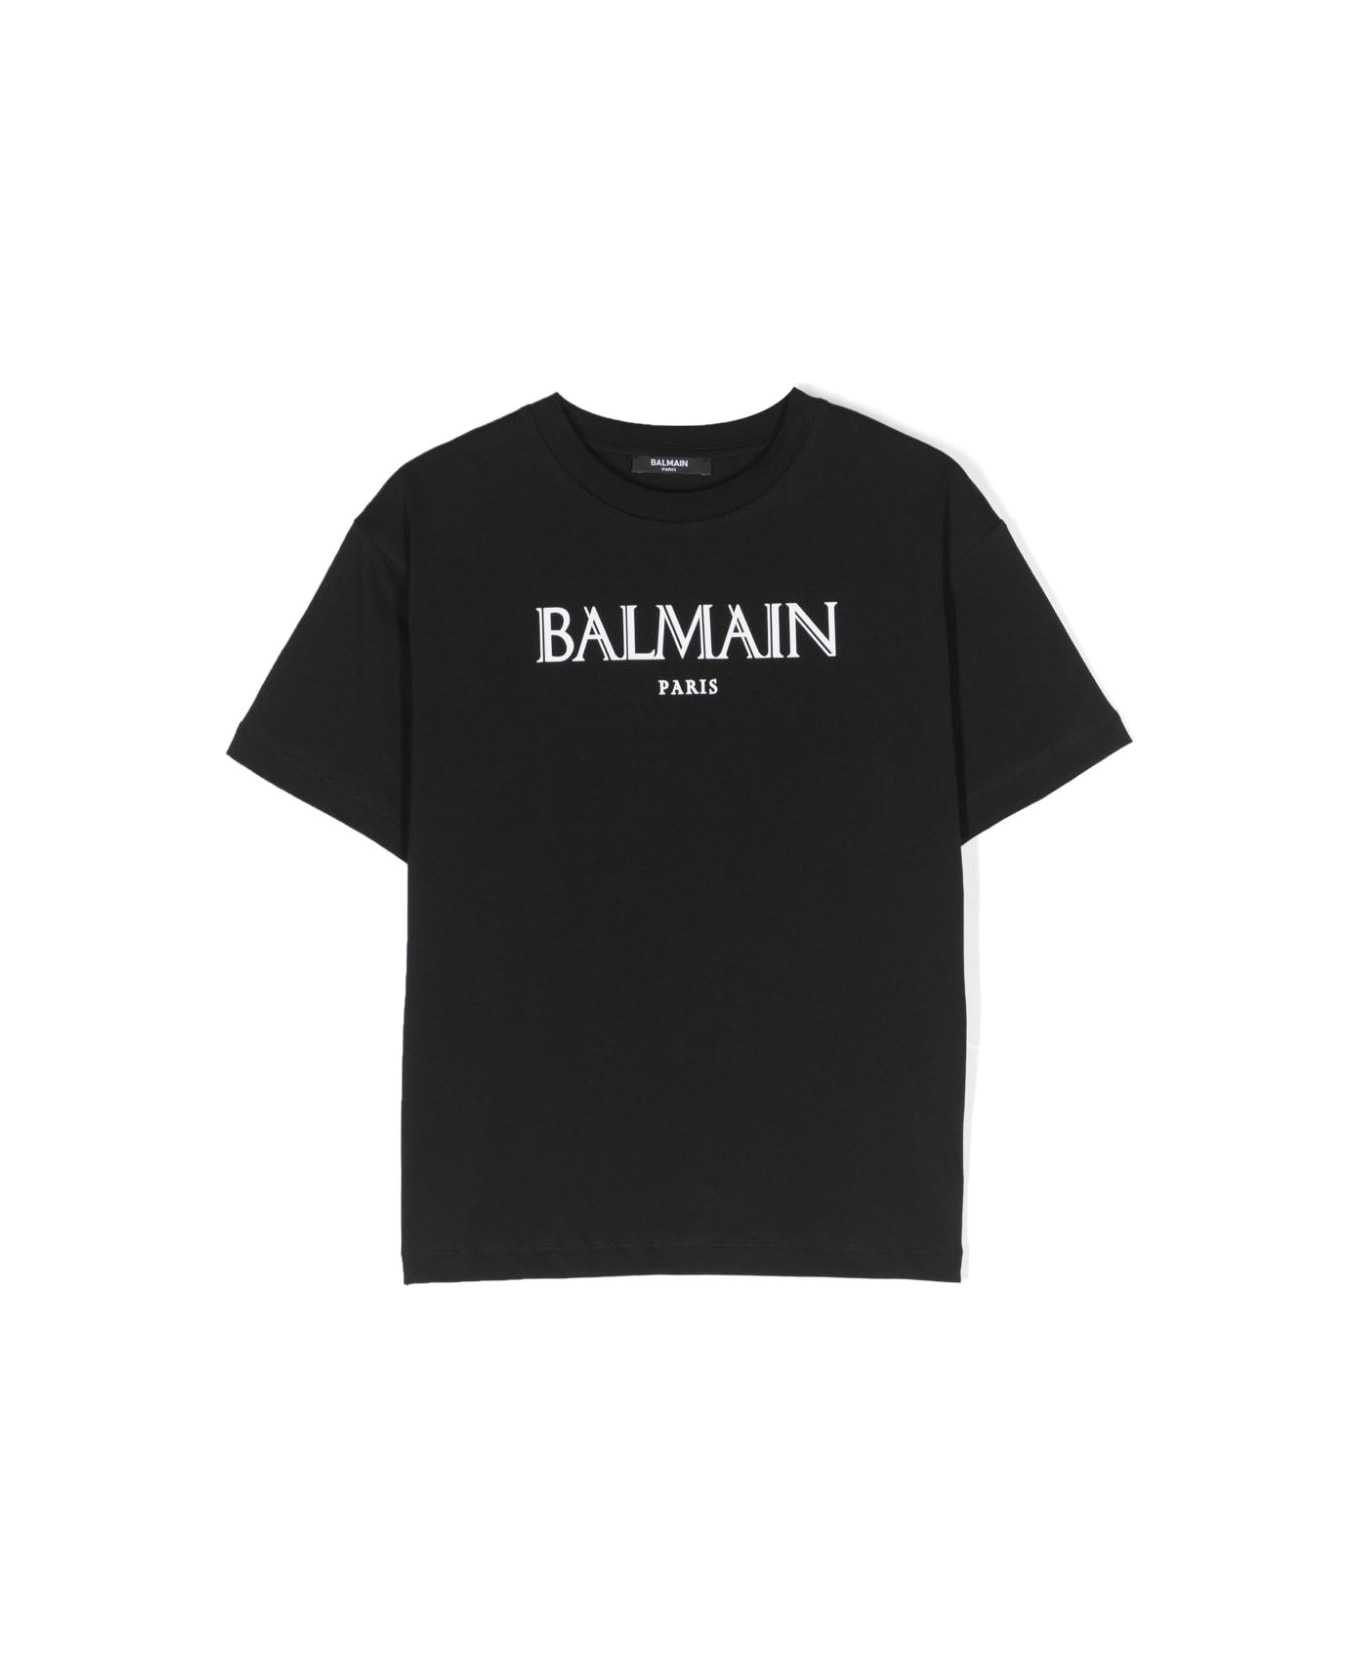 Balmain Printed T-shirt - Bc